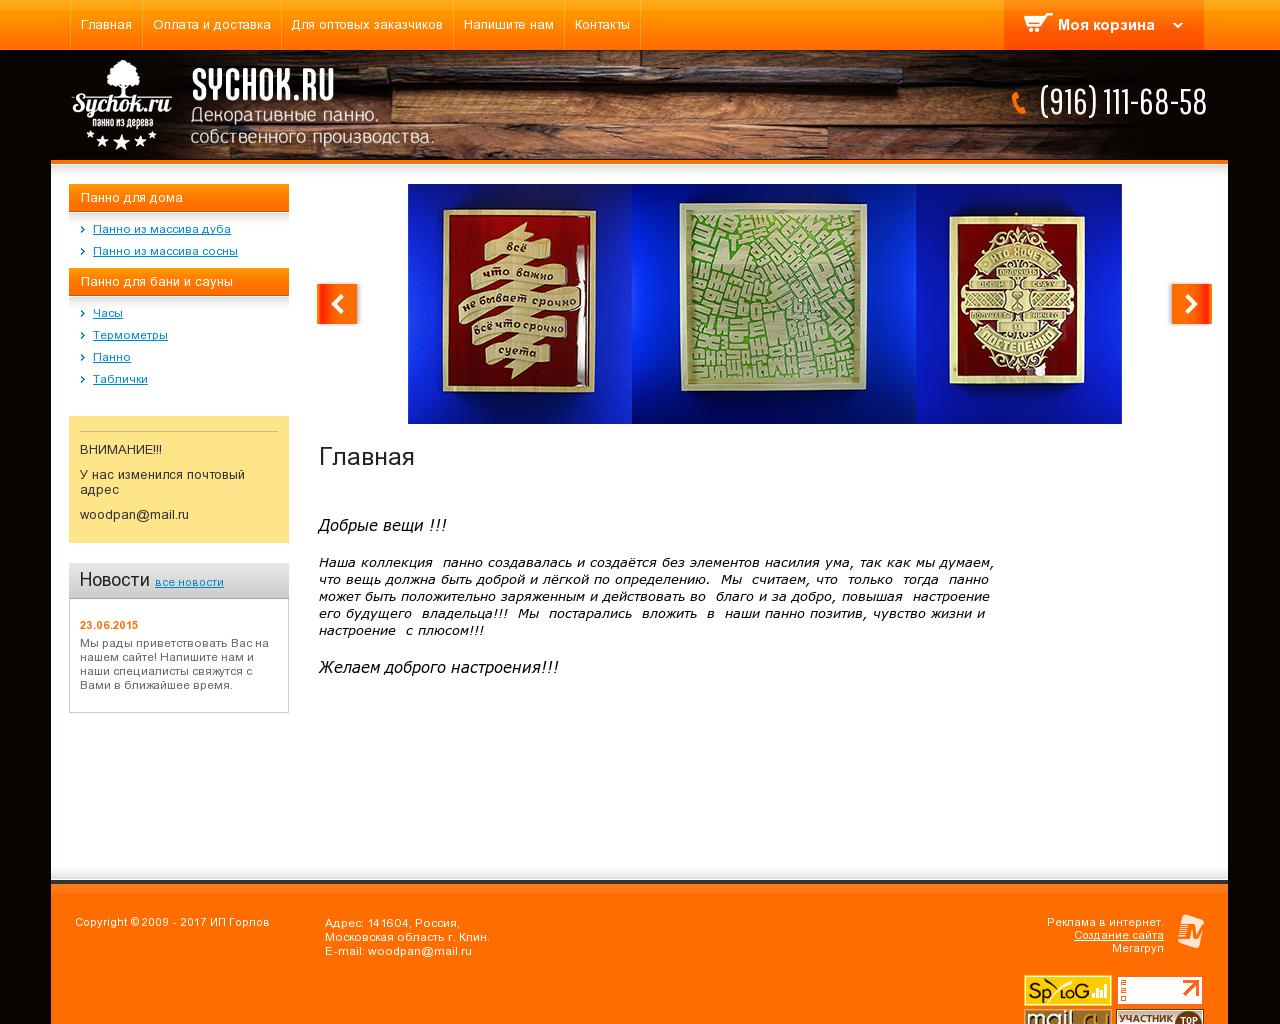 Изображение сайта sychok.ru в разрешении 1280x1024